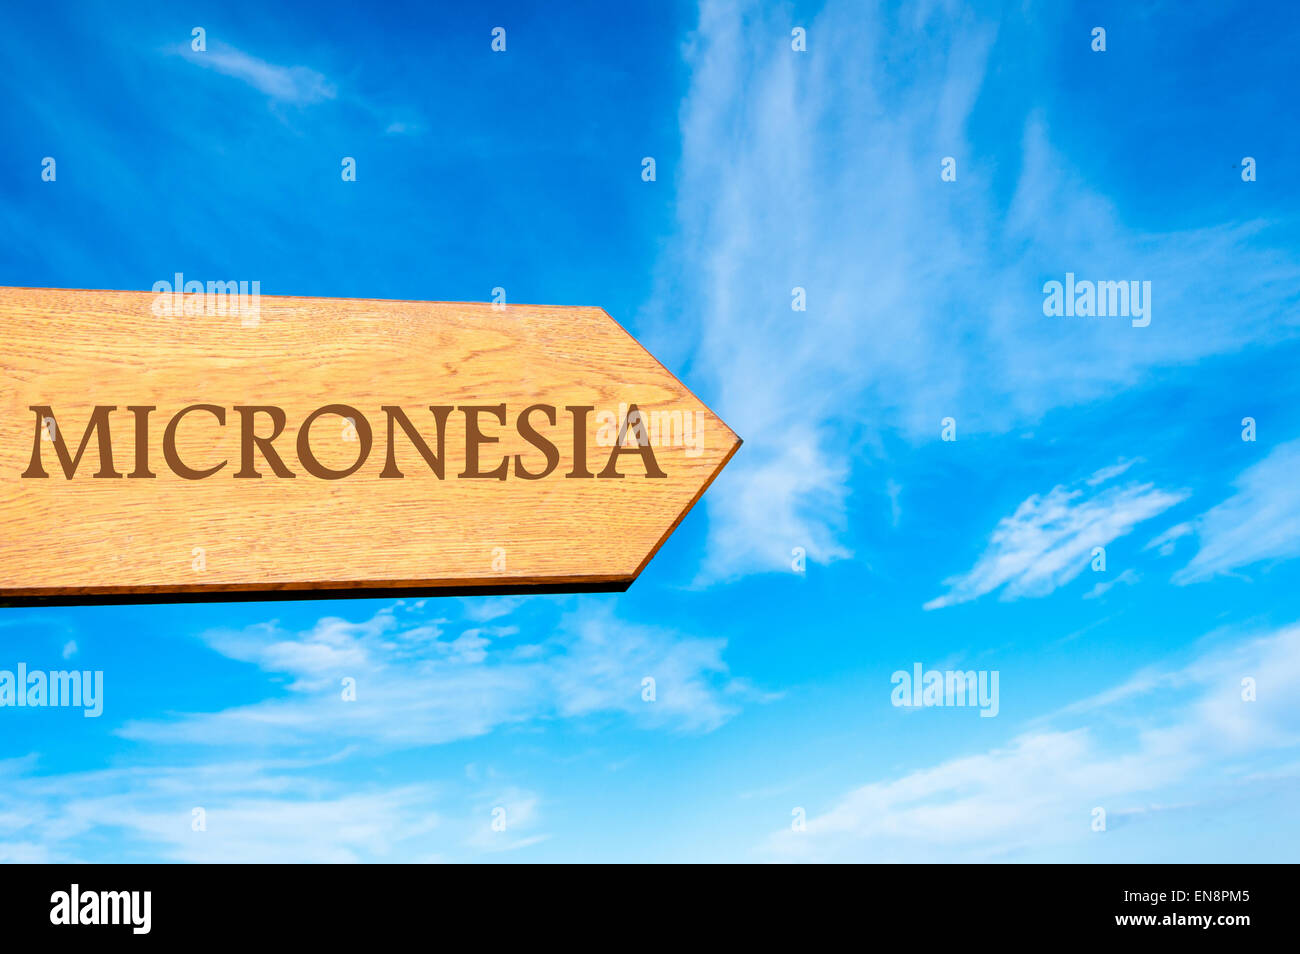 Signo de flecha de madera apuntando destino Micronesia contra el cielo azul claro con copia espacio disponible. Imagen conceptual del destino de viaje Foto de stock